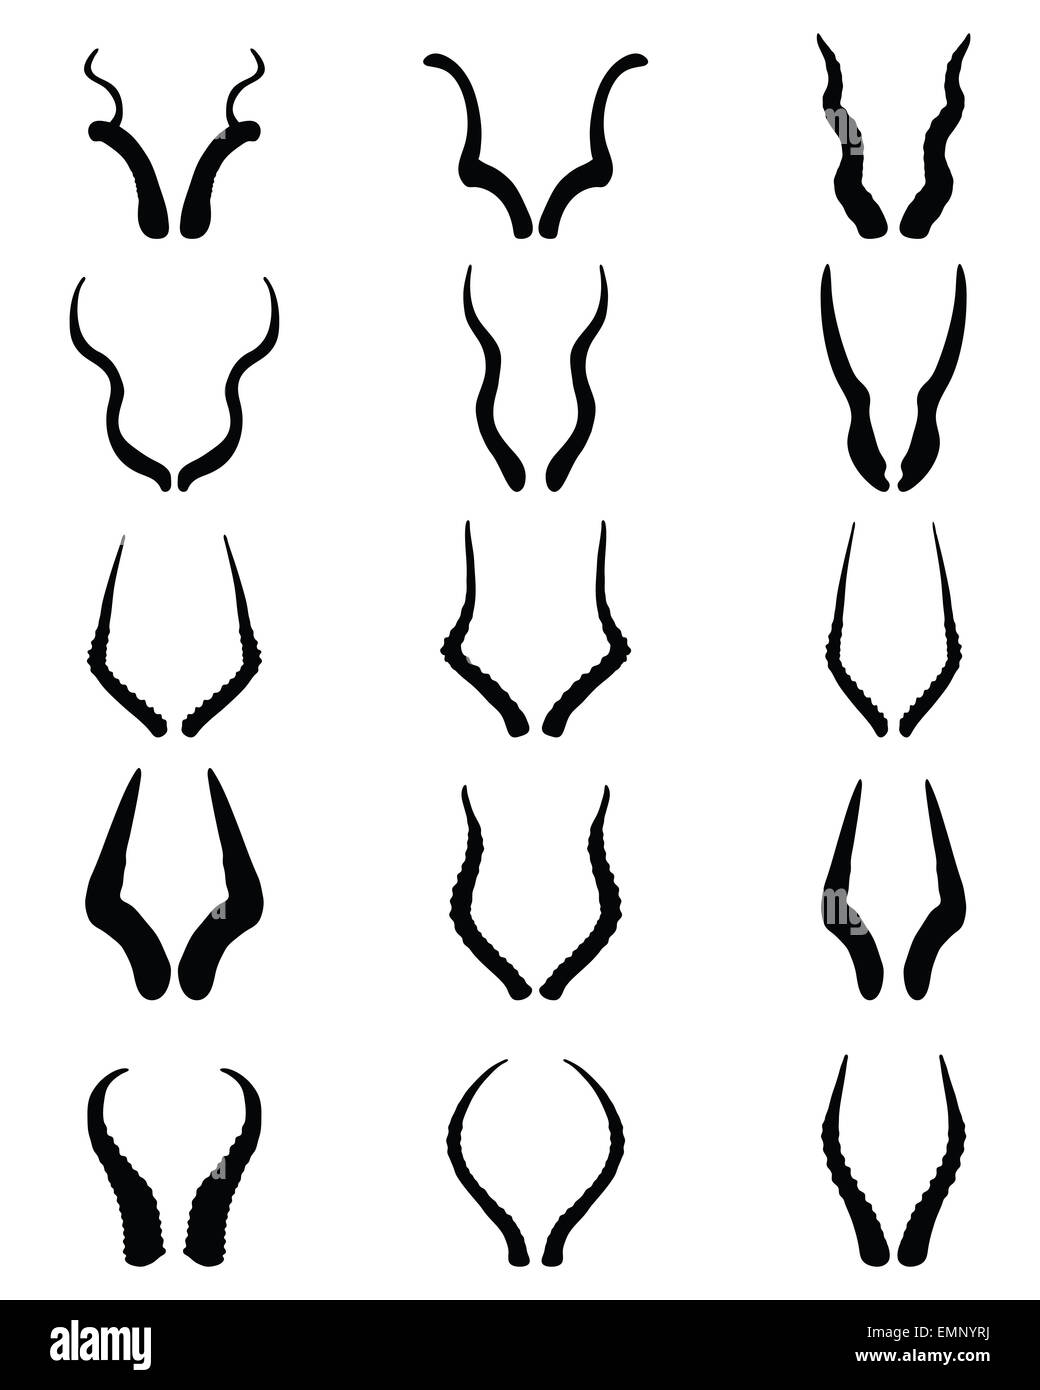 horns of antelopes Stock Photo